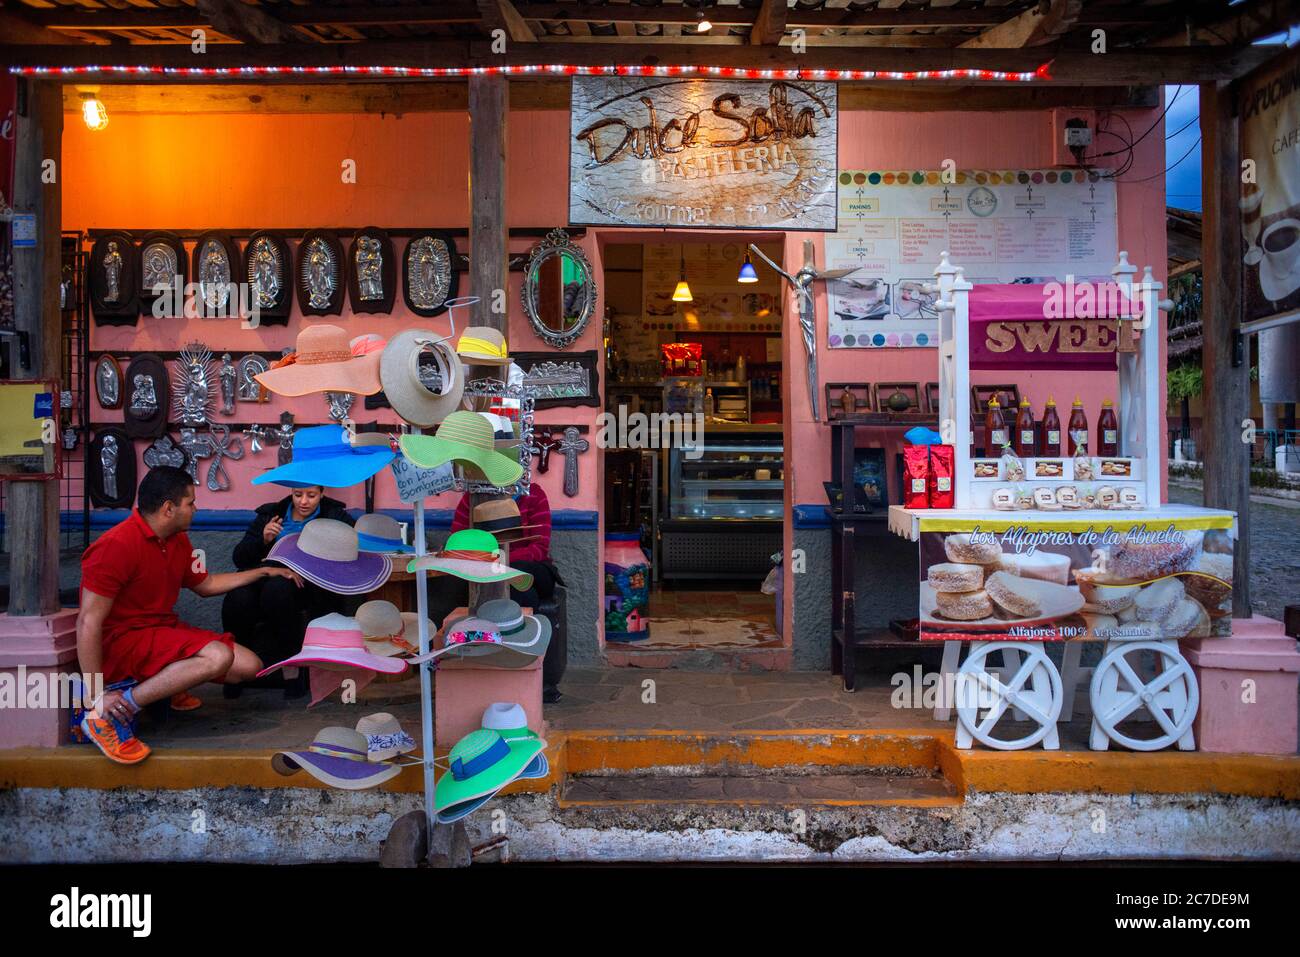 Dulce Sofia boulangerie et magasin de souvenirs à Concepcion de Ataco Ahuachapán département El Salvador Amérique centrale. Ruta de Las Flores, département de l'AHU Banque D'Images